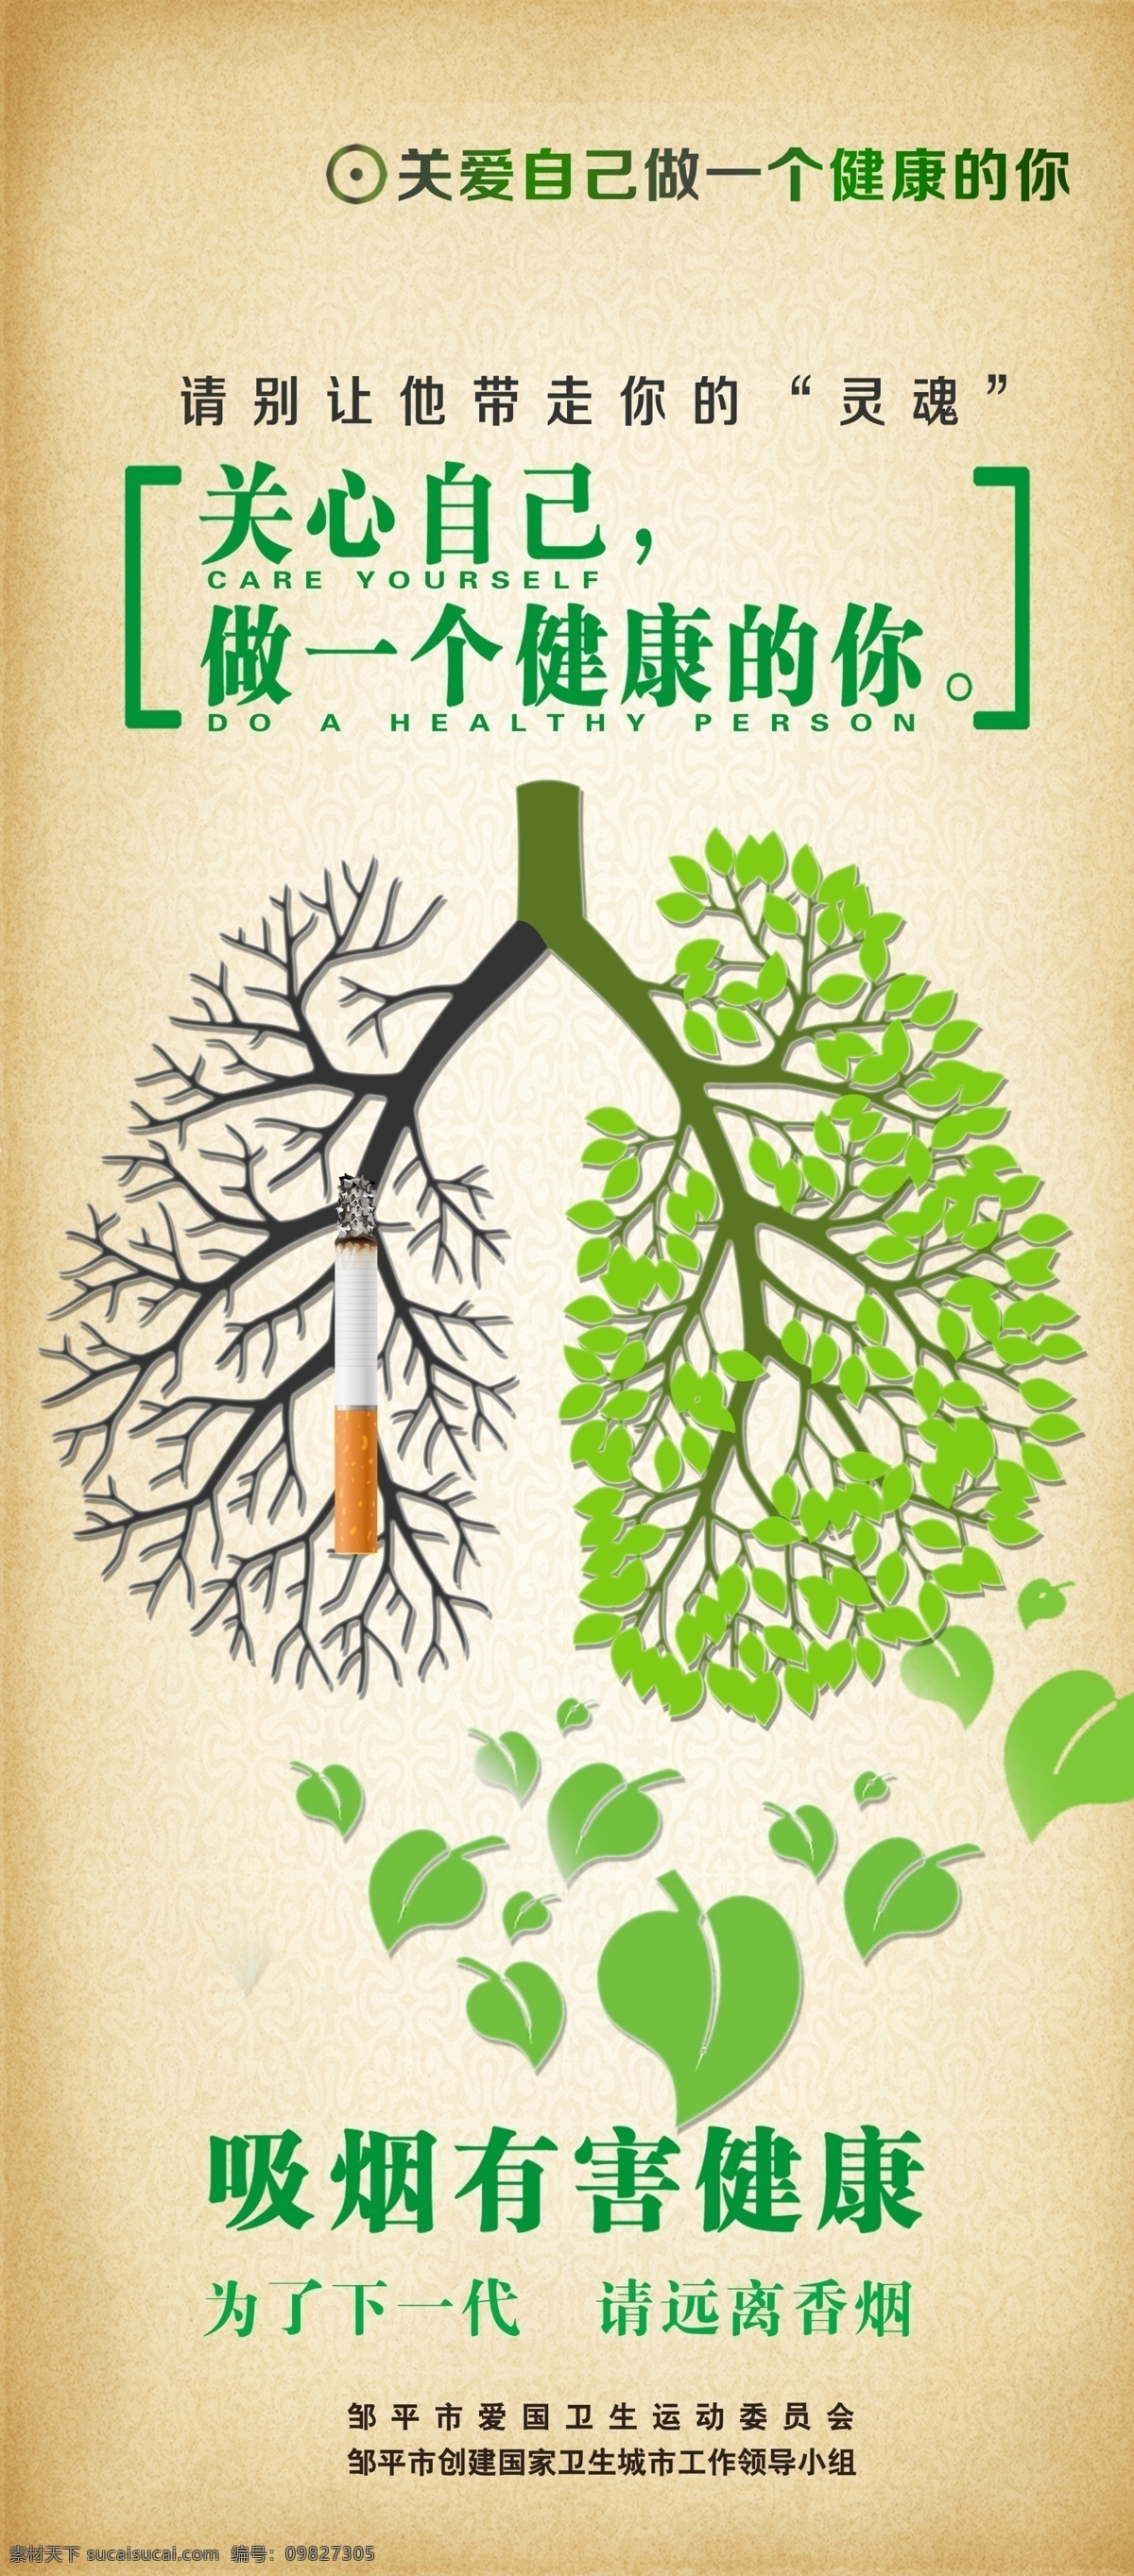 吸烟有害健康 吸烟 健康 肺 绿叶 生命